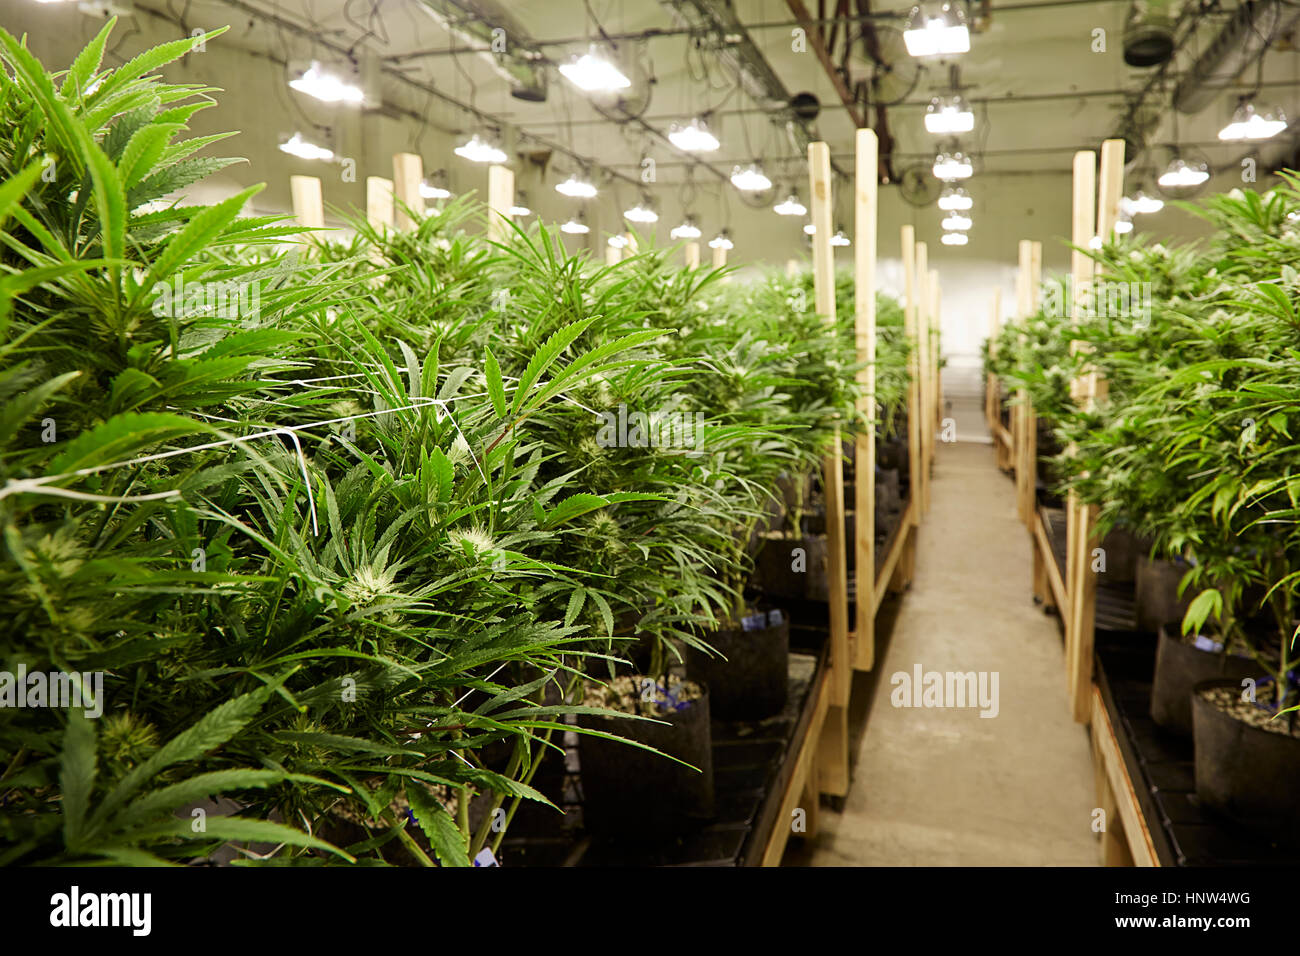 Las plantas de cannabis crecen en invernadero Foto de stock